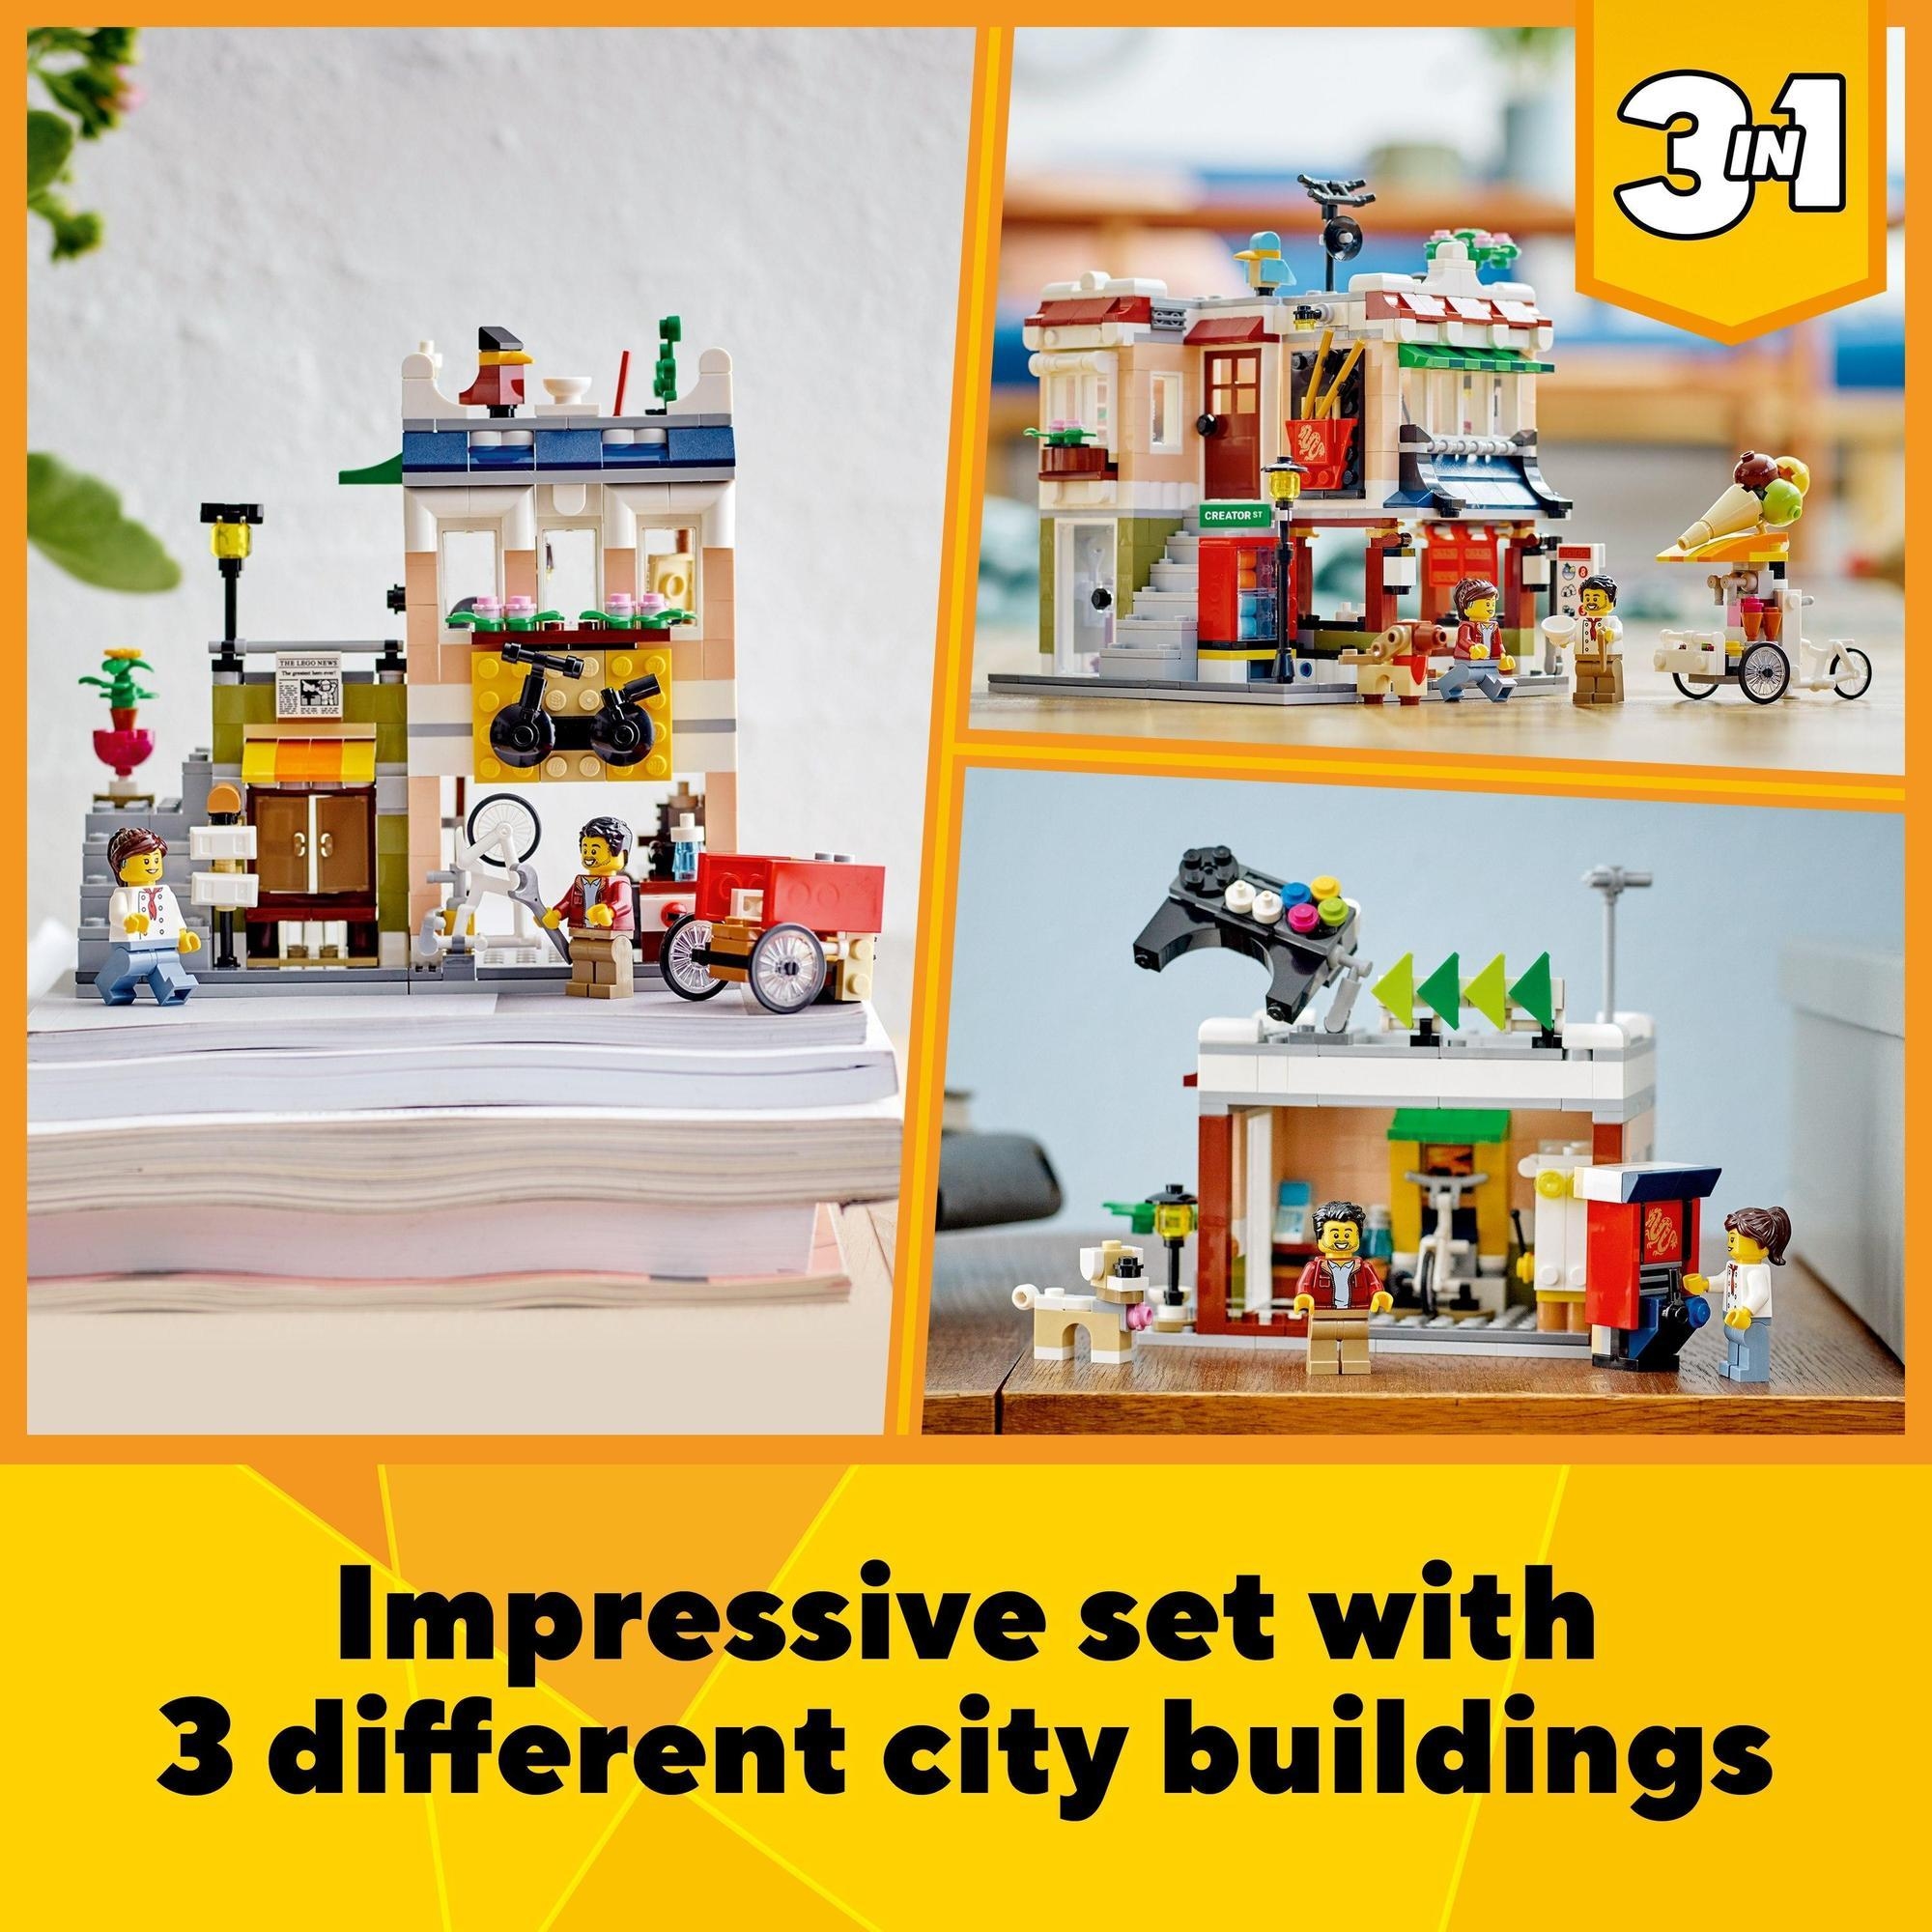 LEGO Creator 31131 Tiệm mì tại trung tâm thành phố (569 chi tiết)